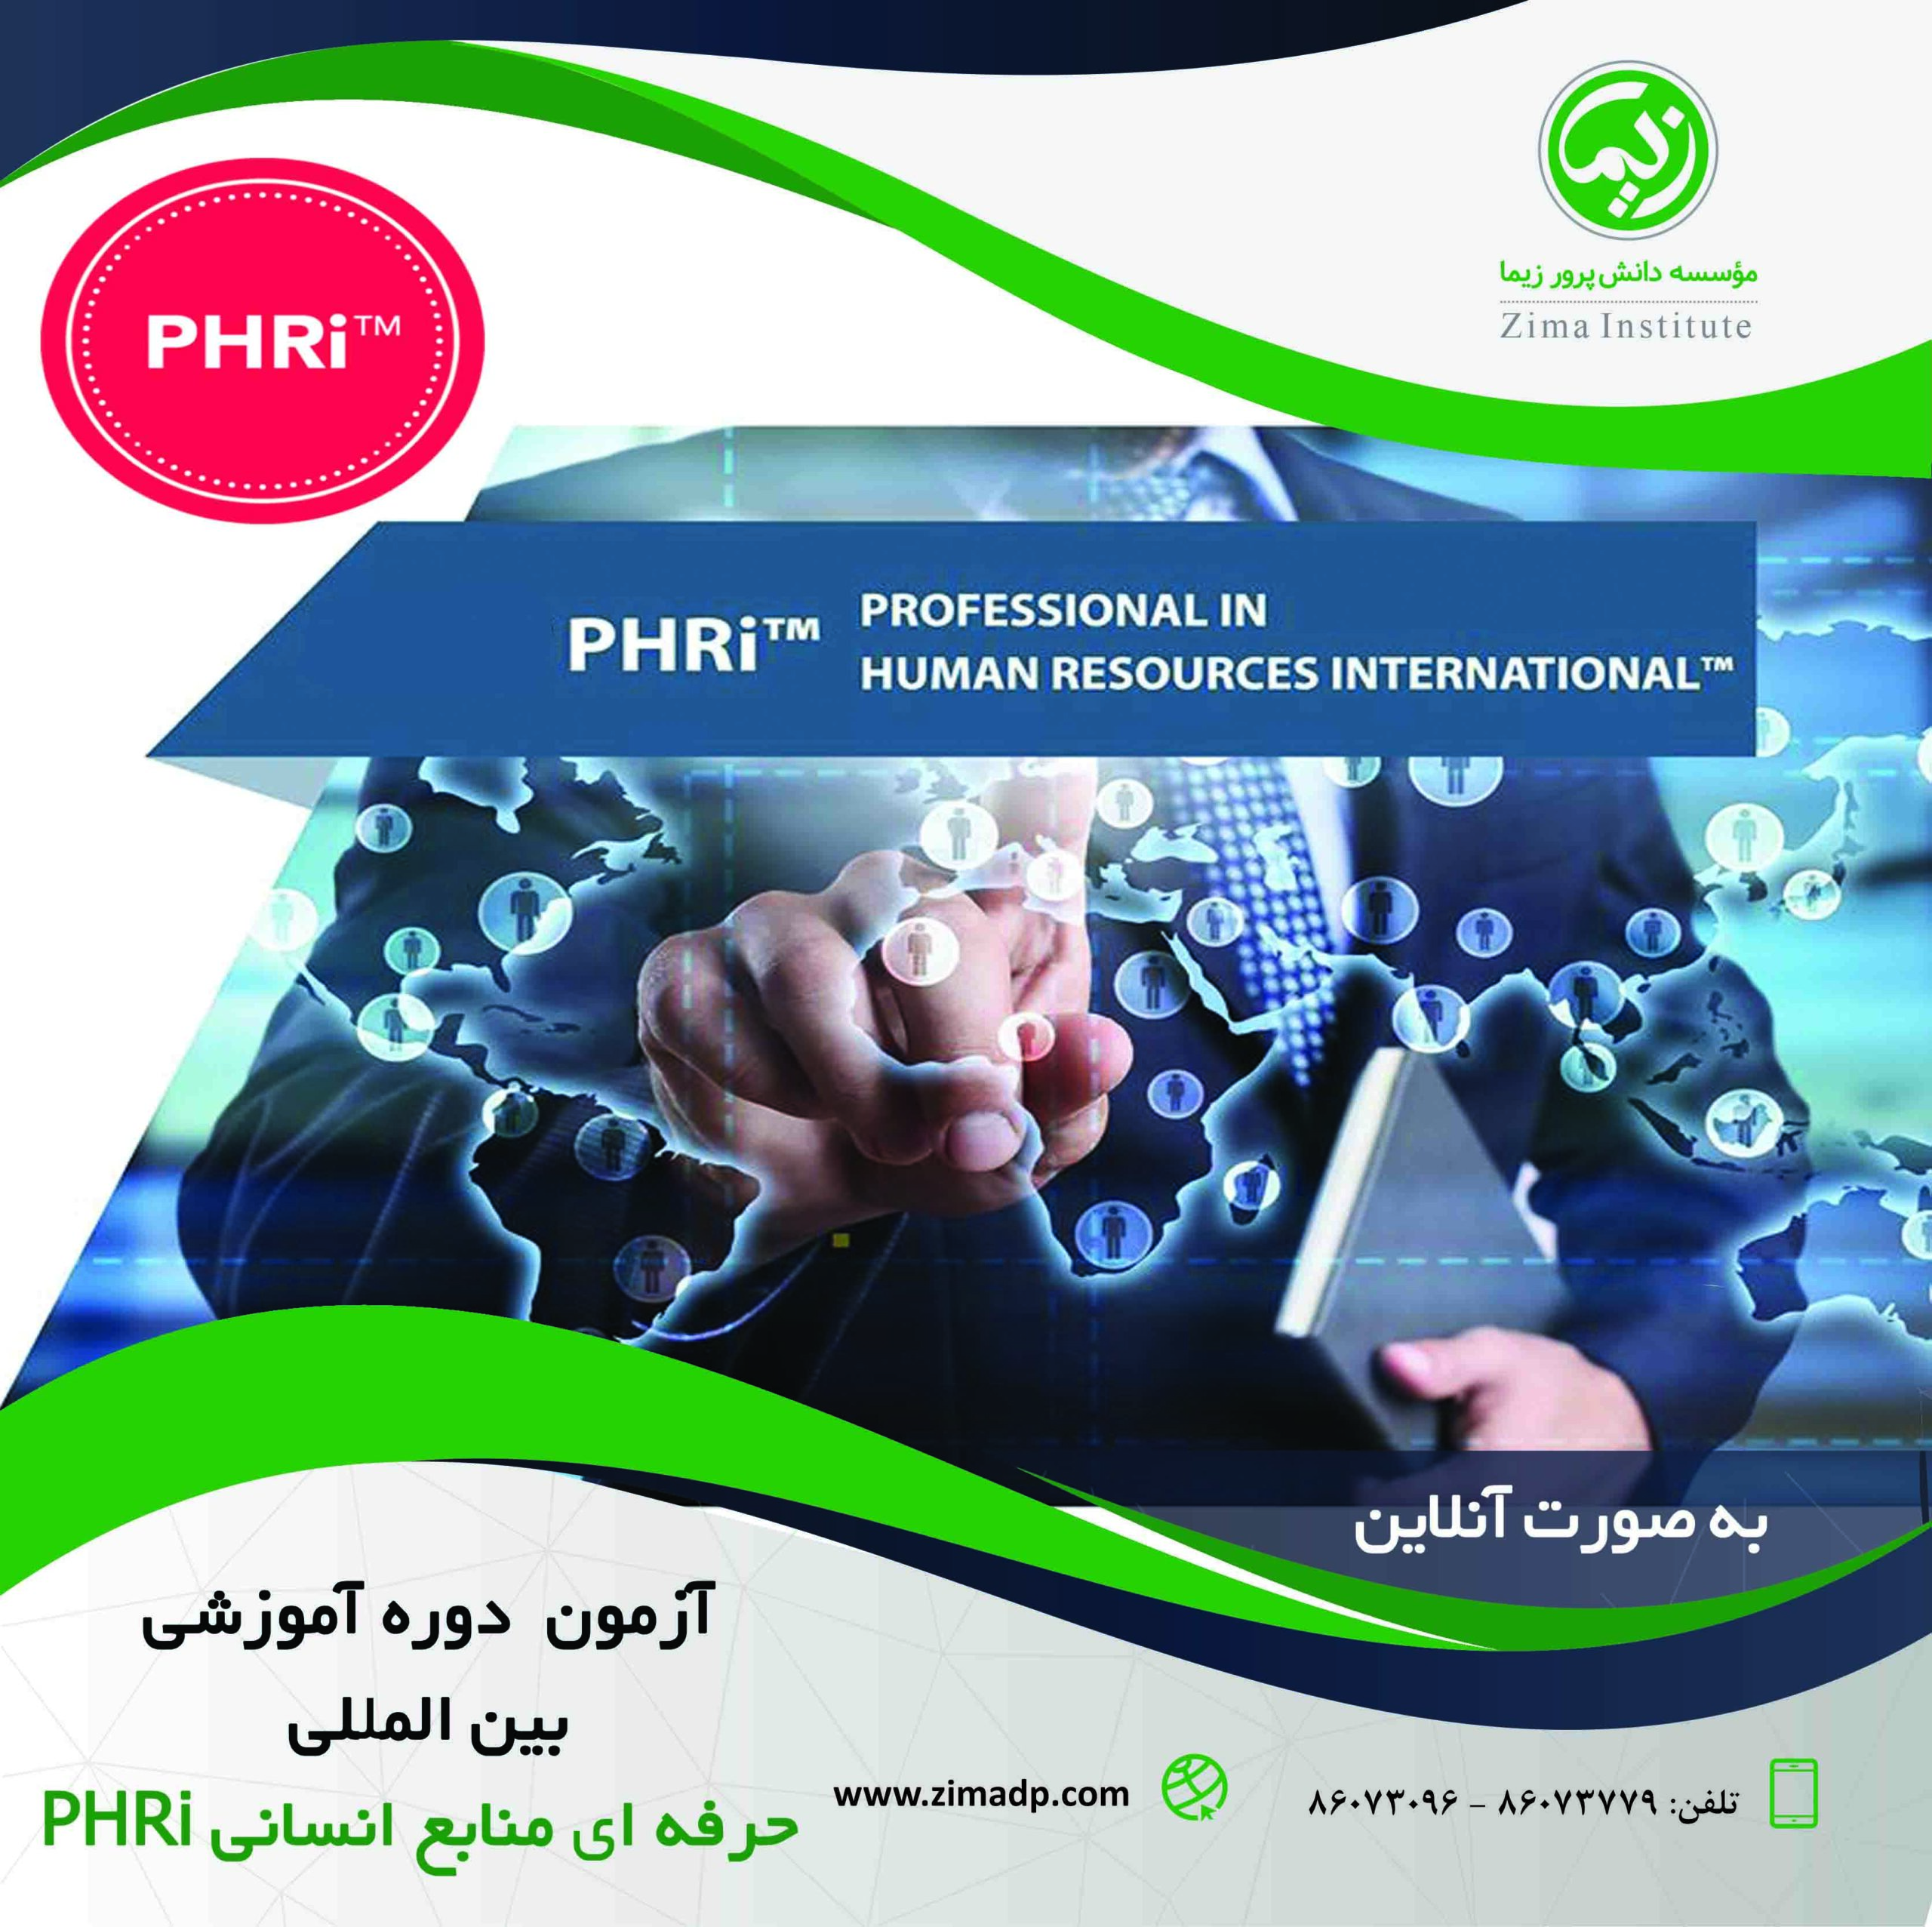 آزمون تعیین سطح دوره آموزشی بین المللی حرفه ای منابع انسانی PHRi